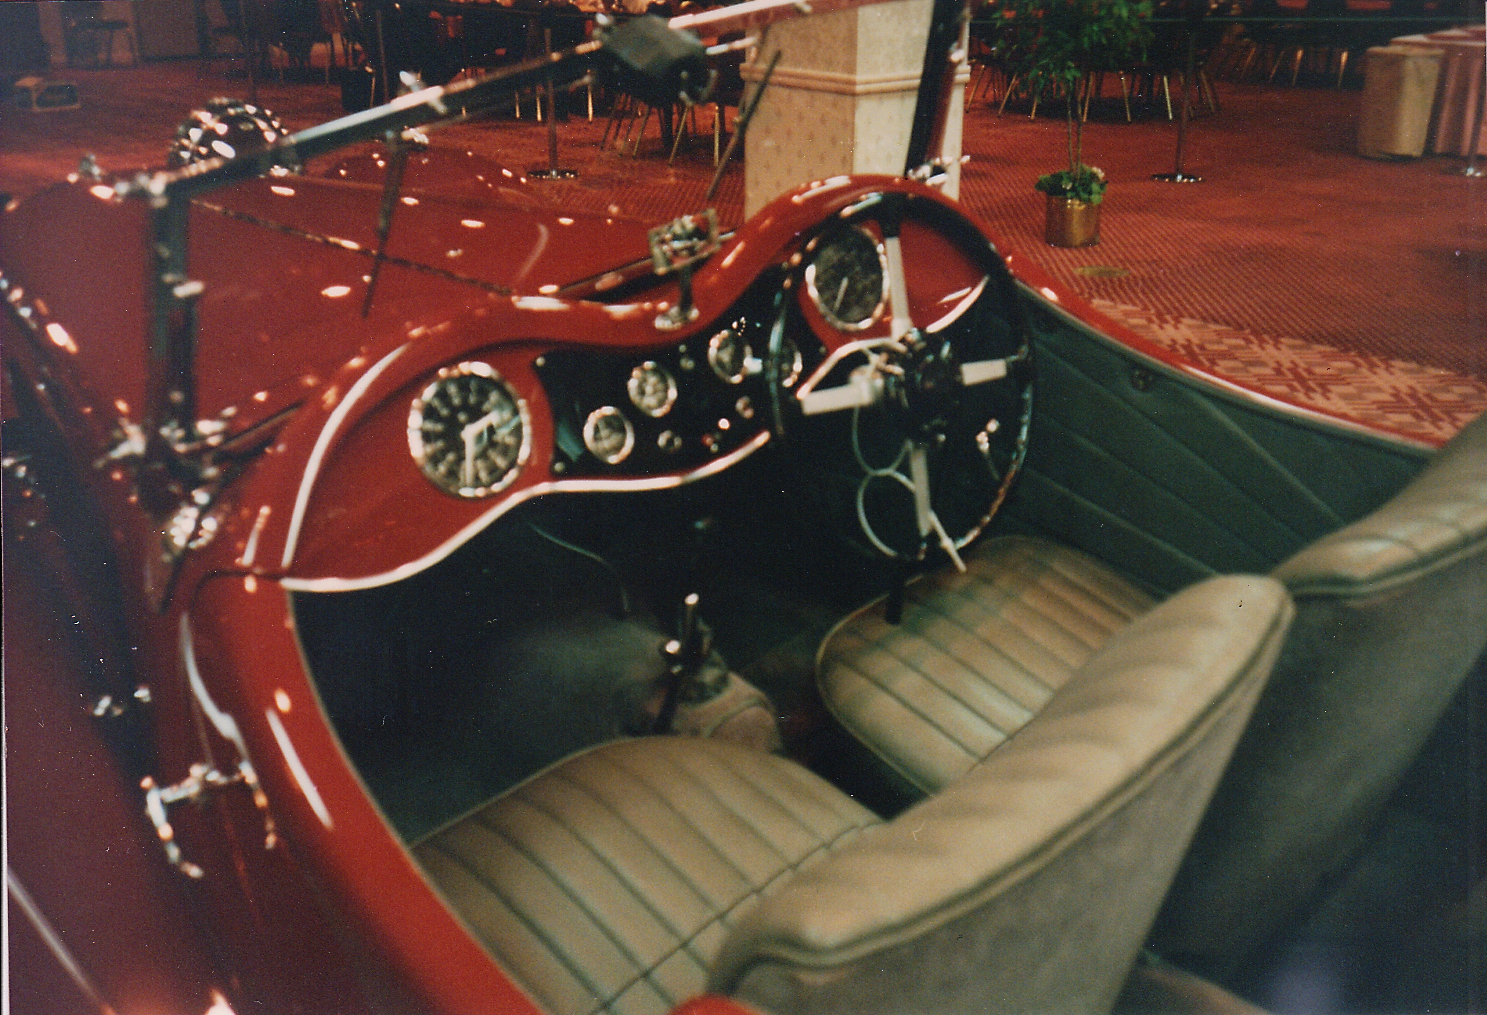 A 1933 SS1, predecessor to the Jaguar.